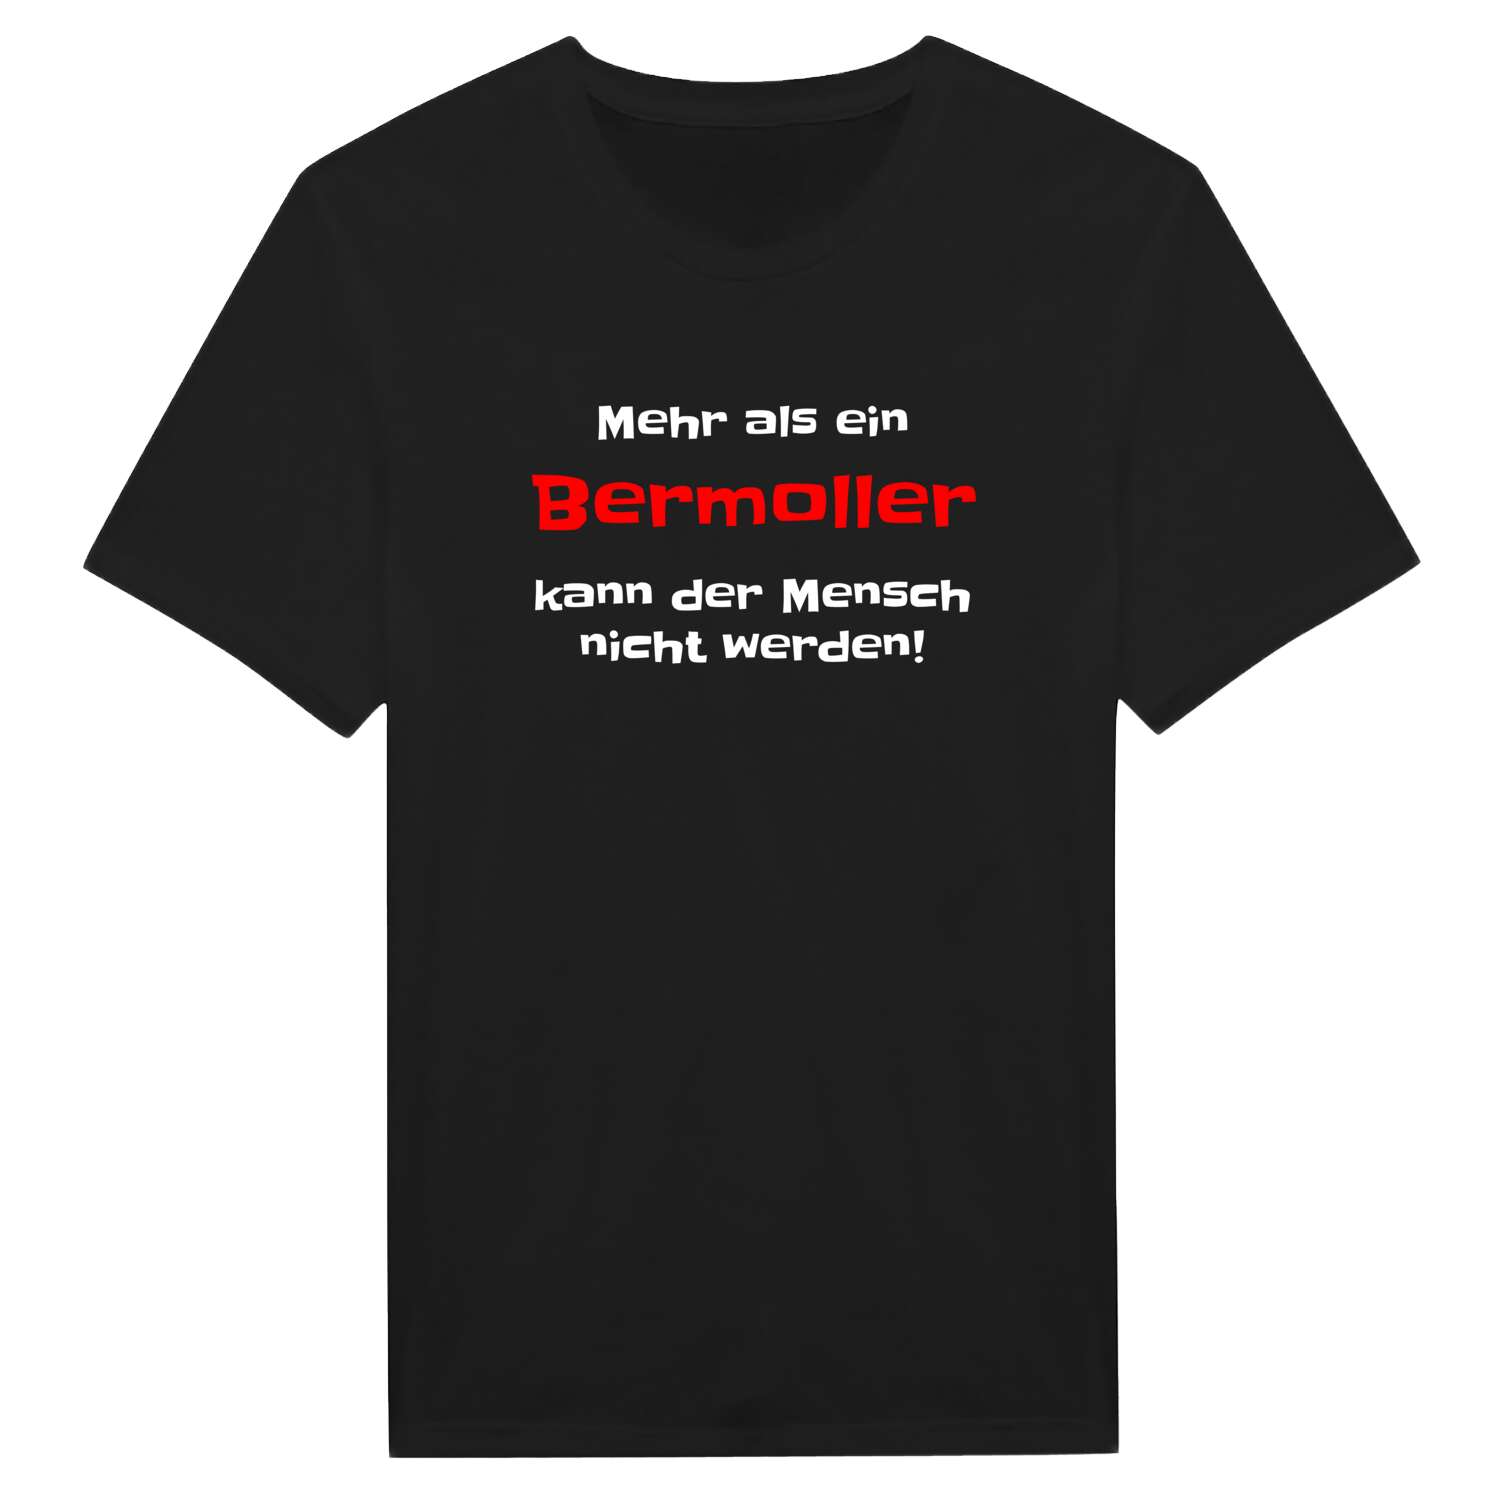 Bermoll T-Shirt »Mehr als ein«